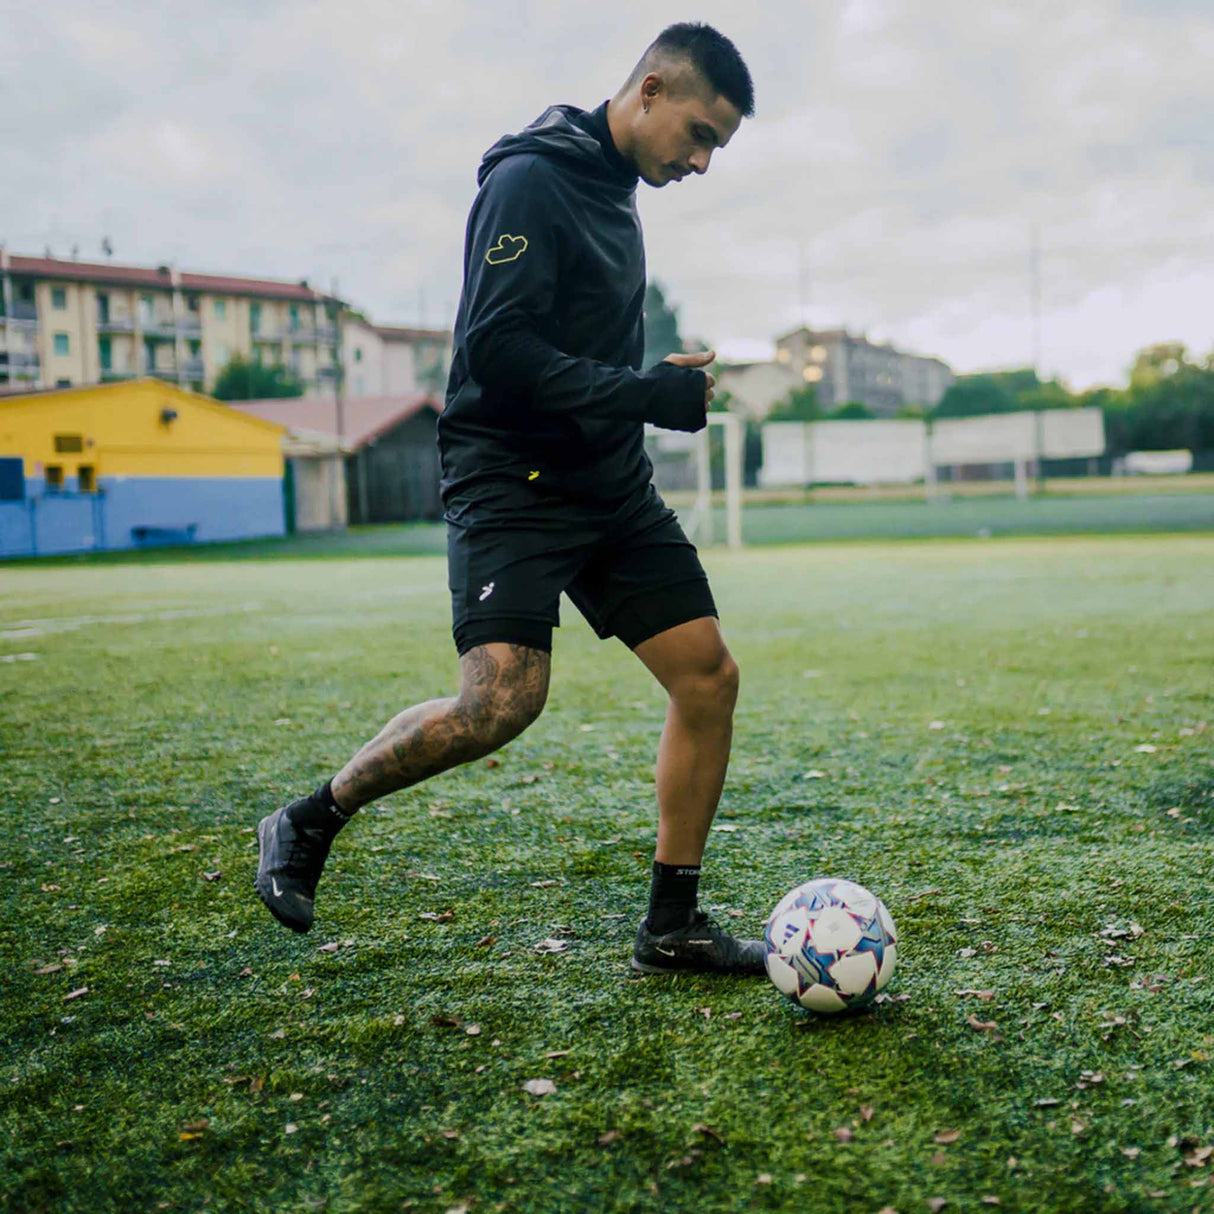 Storelli BodyShield Impact Sliders cuissards de protection pour joueur de soccer